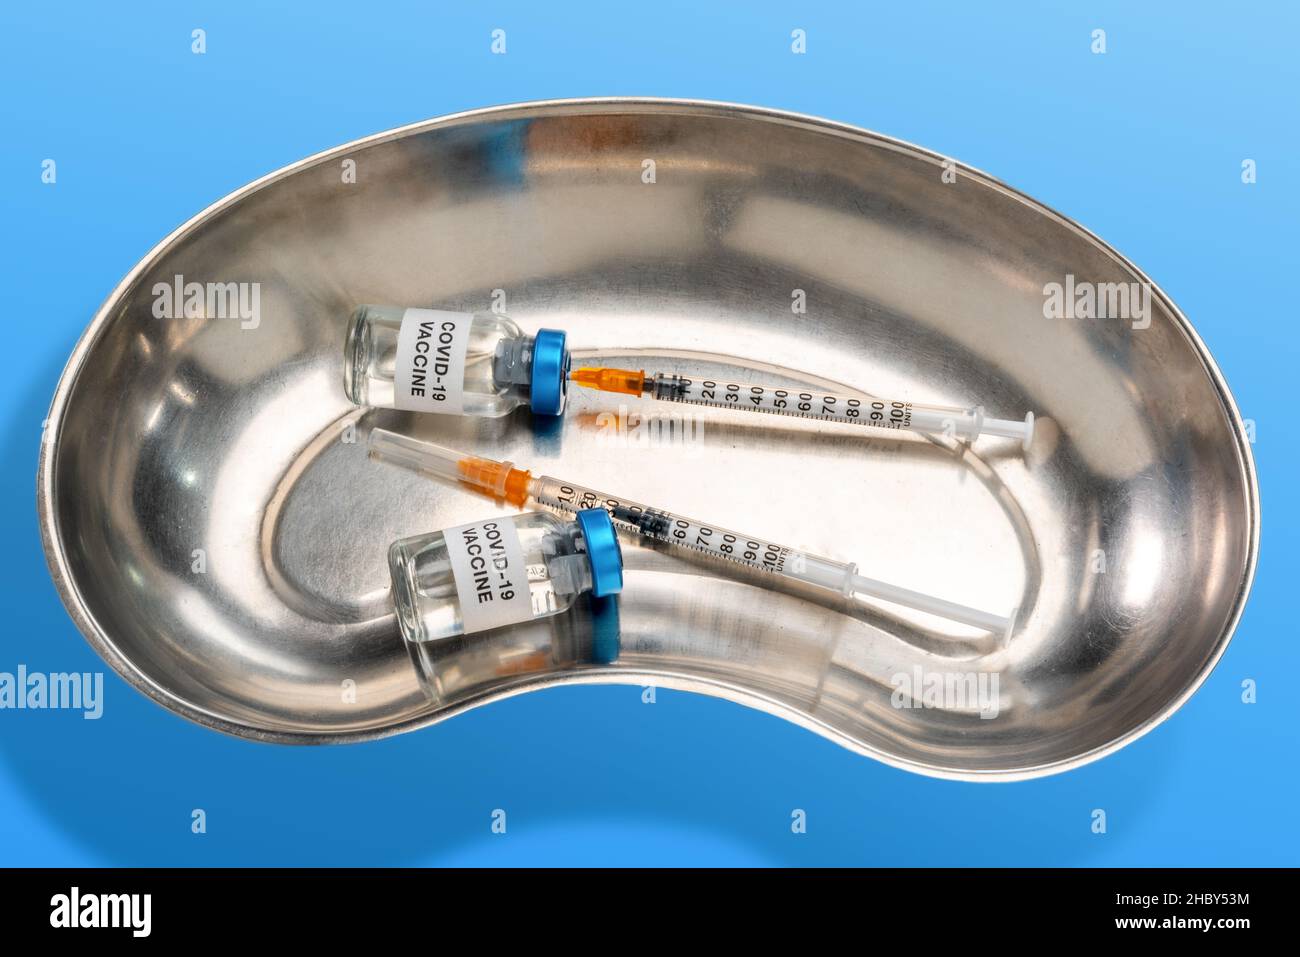 Zwei Impfstofffläschchen mit Spritze, die in einer nichtrostenden medizinischen Nierenschale ansaugt, auf hellblauem Hintergrund Stockfoto